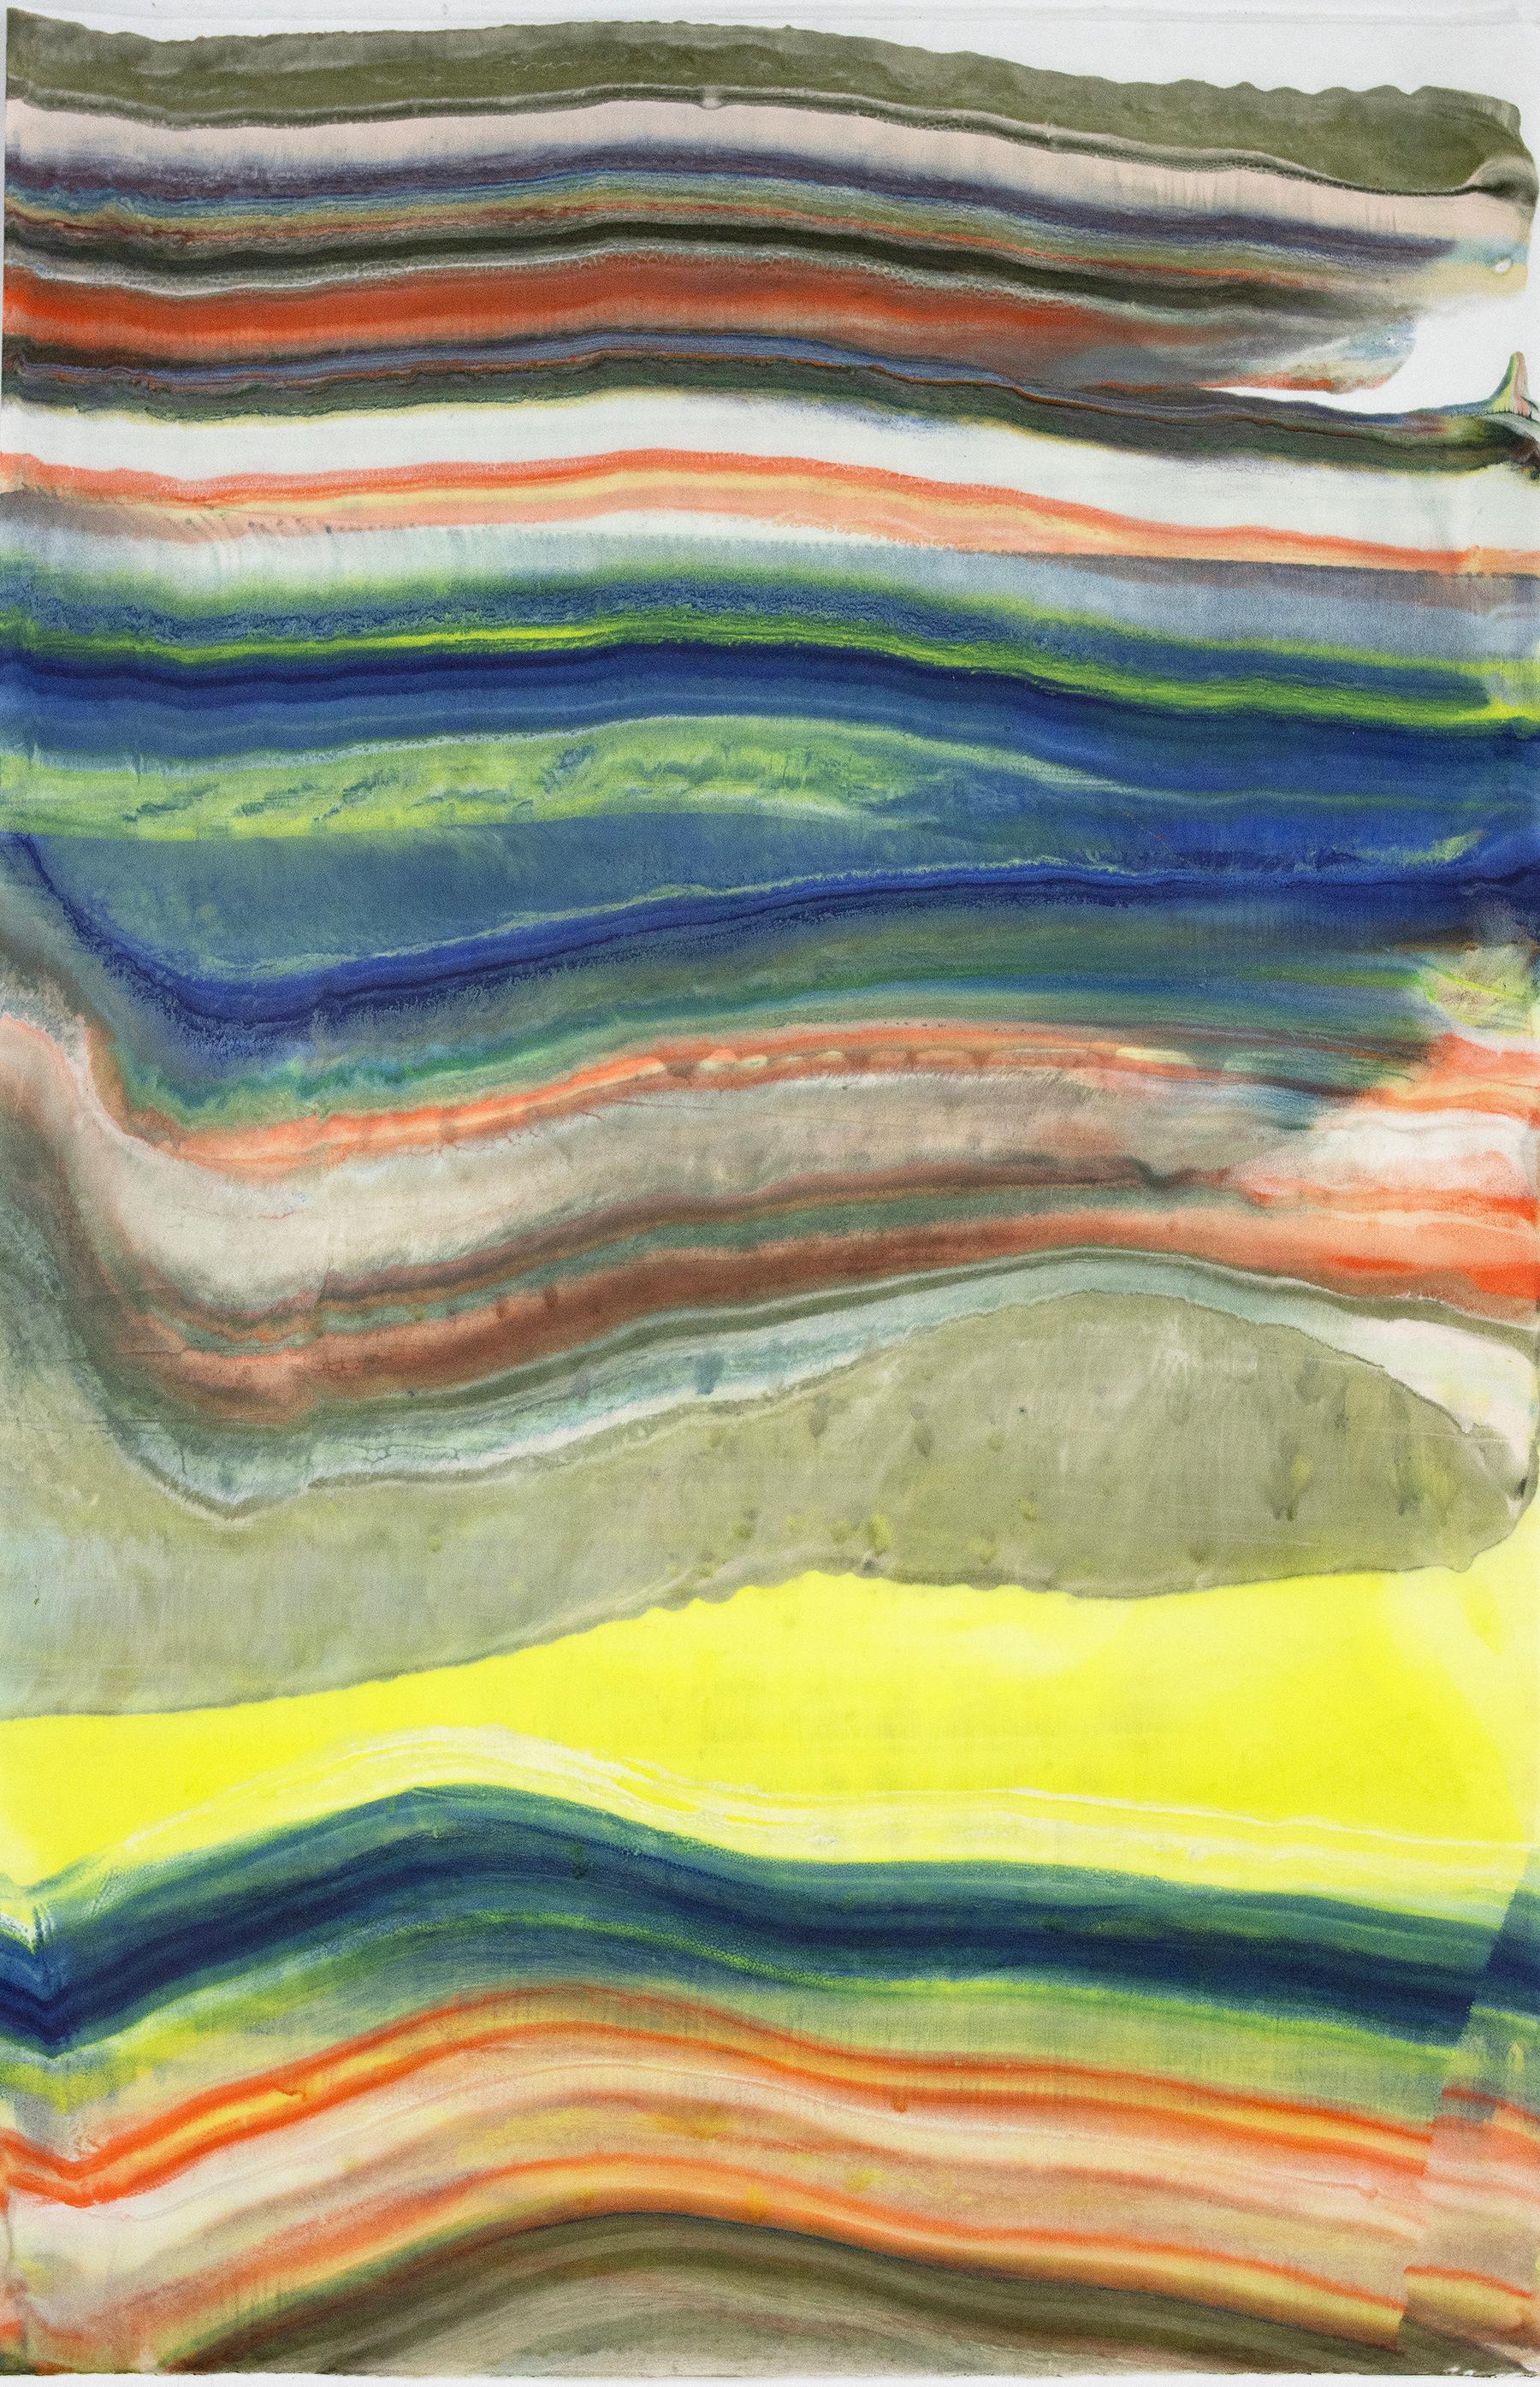 Abstract Print Laura Moriarty - Parler aux rochers 28, bleu marine, jaune citron, brun orange Monotype à l'encaustique